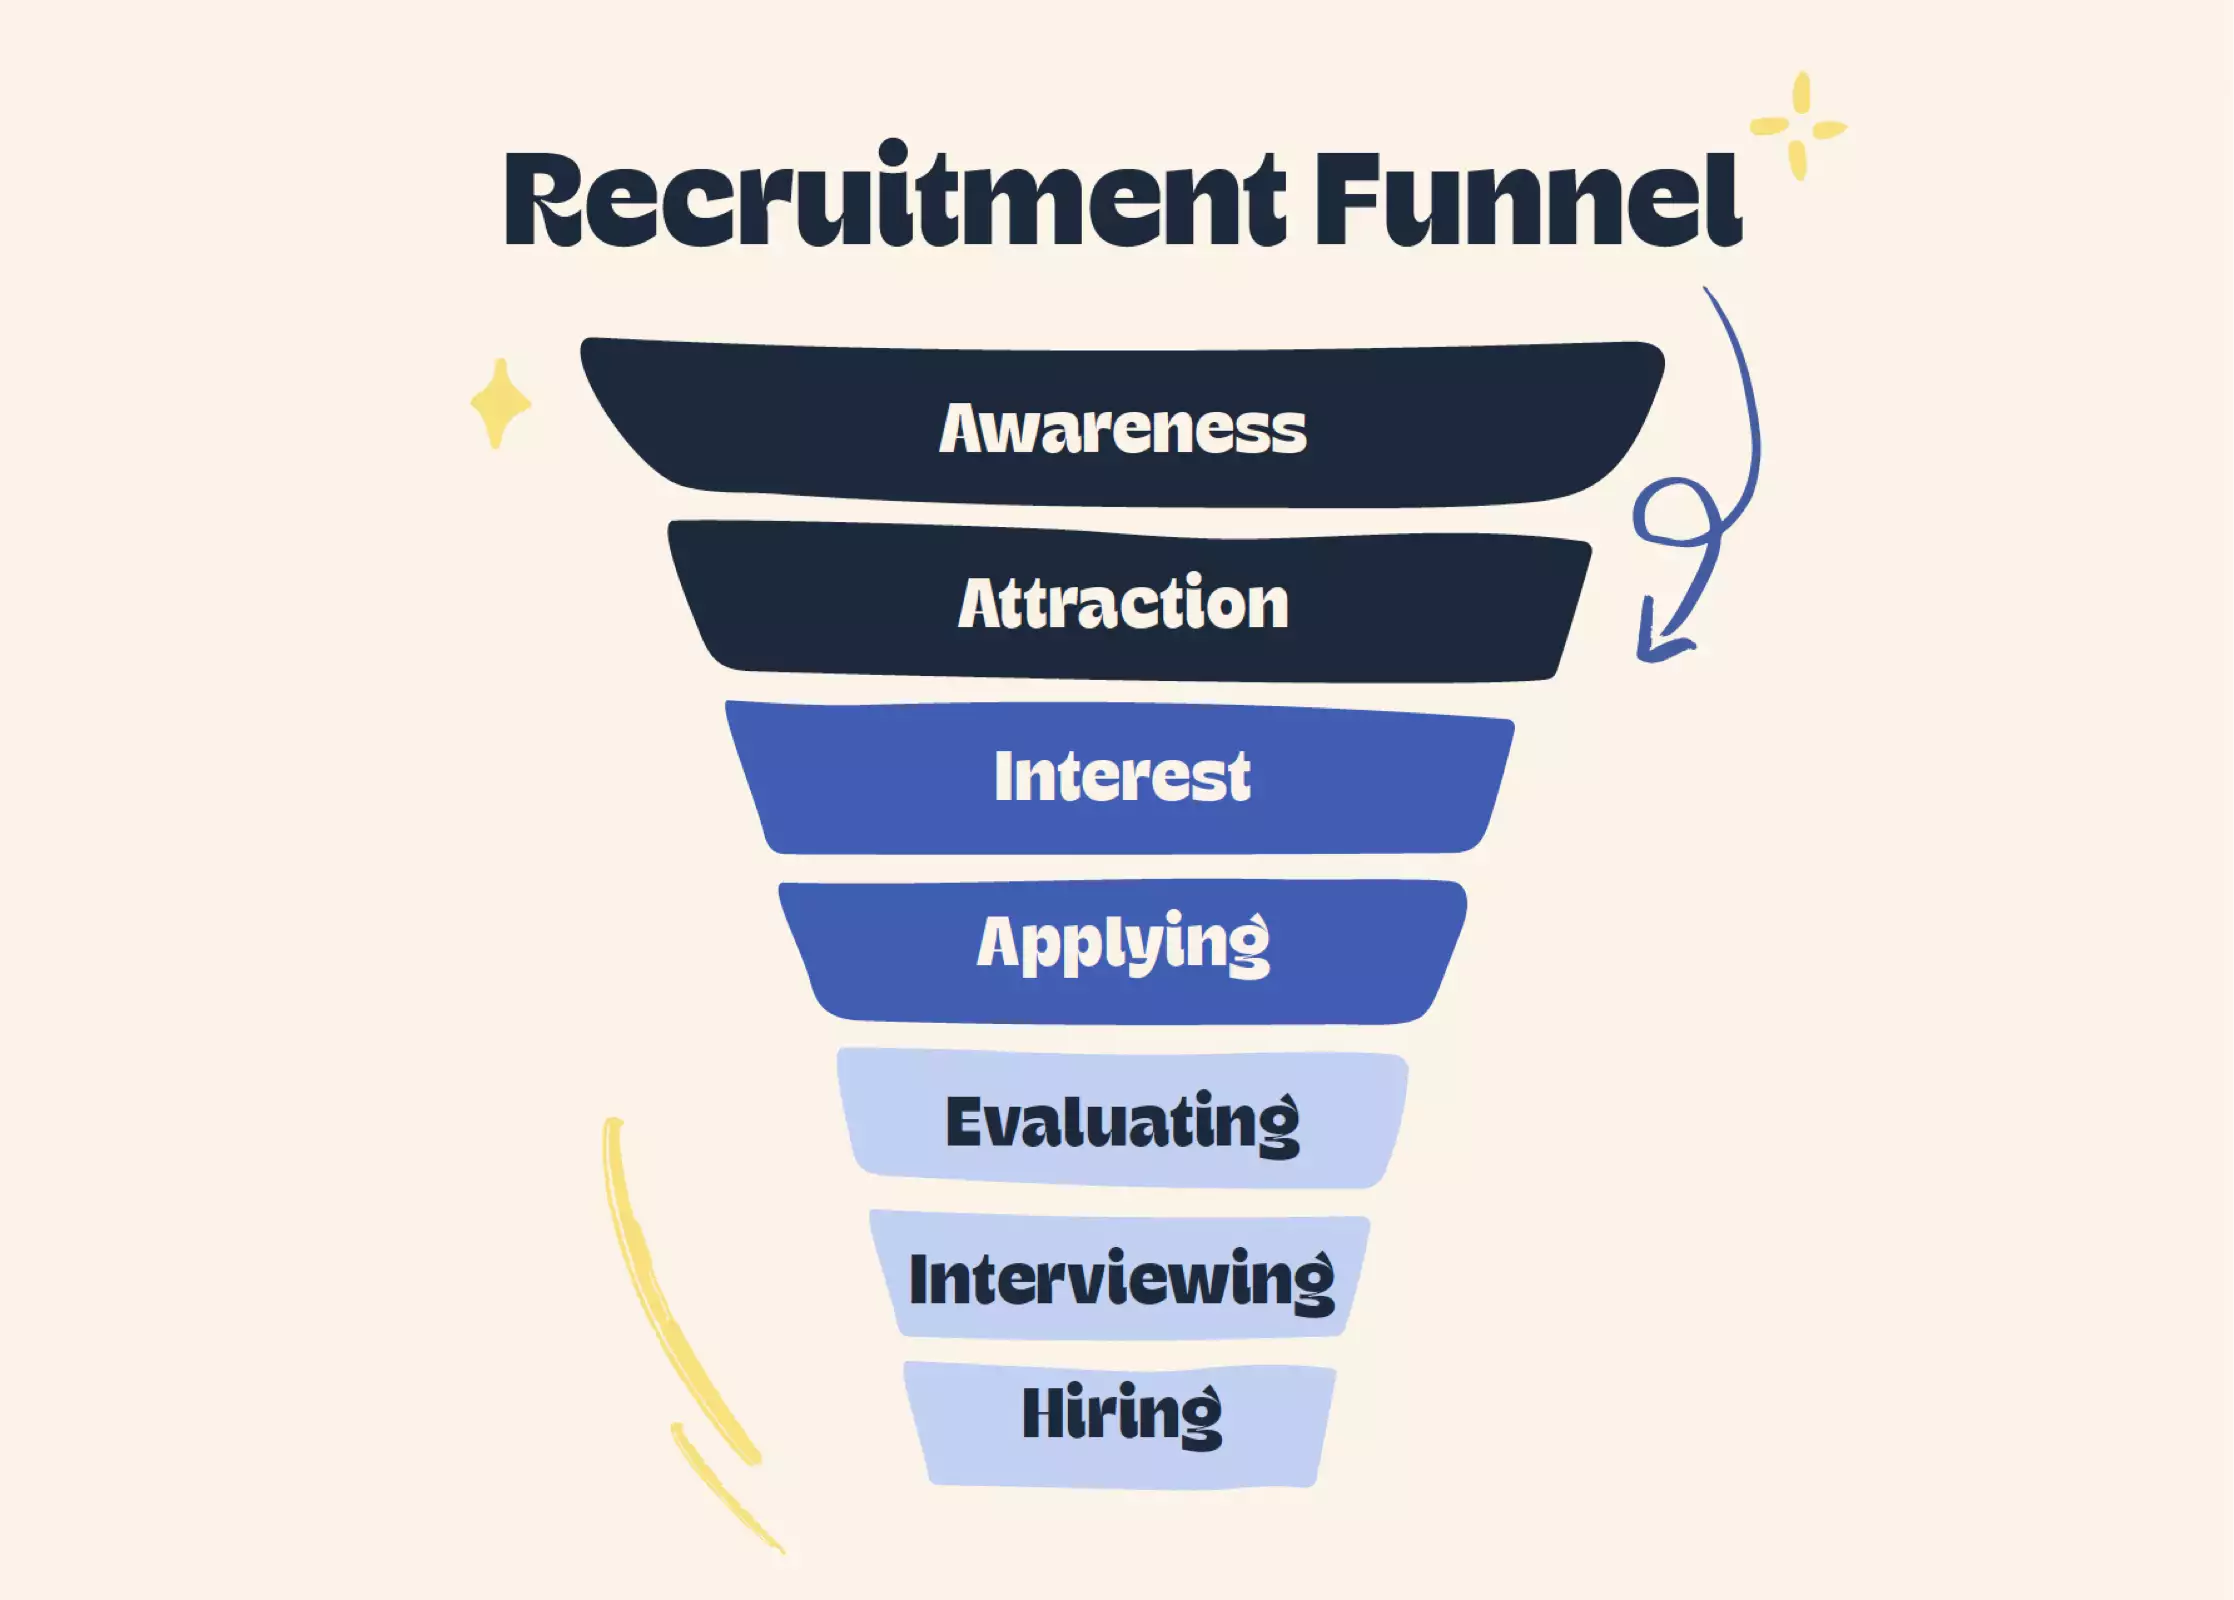 Recruitment funnel graphic